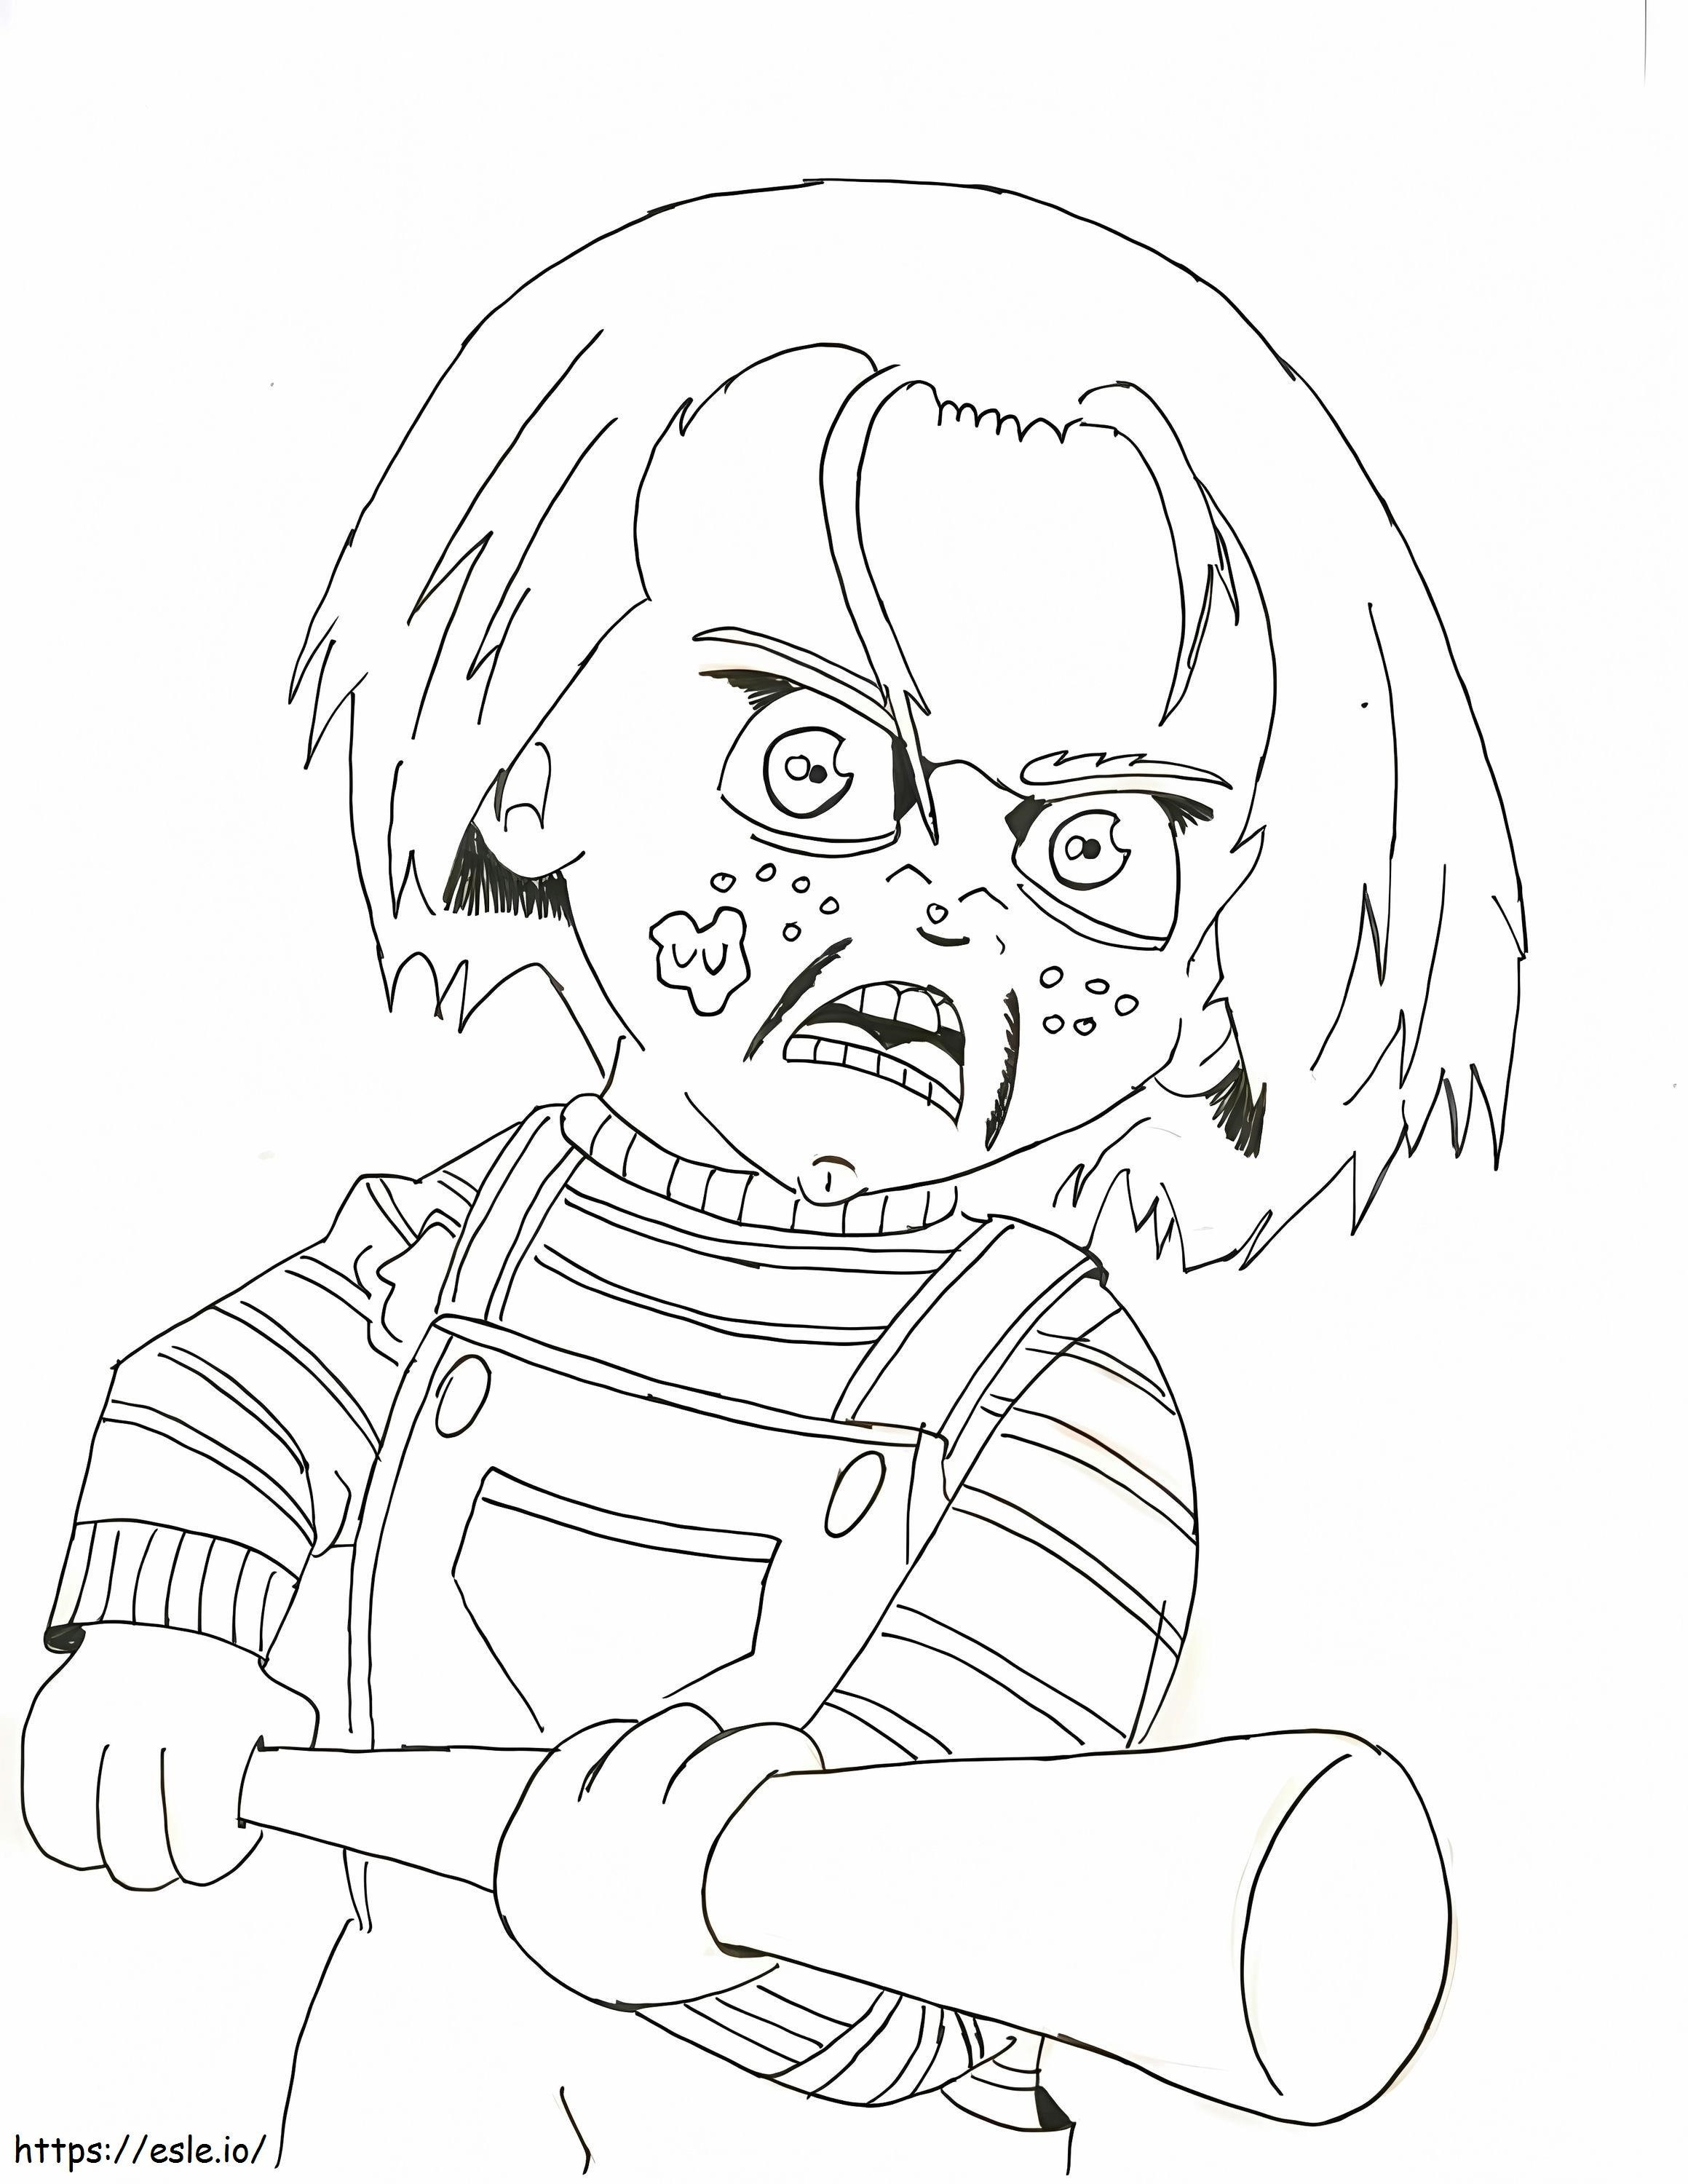 Wściekły Chucky kolorowanka